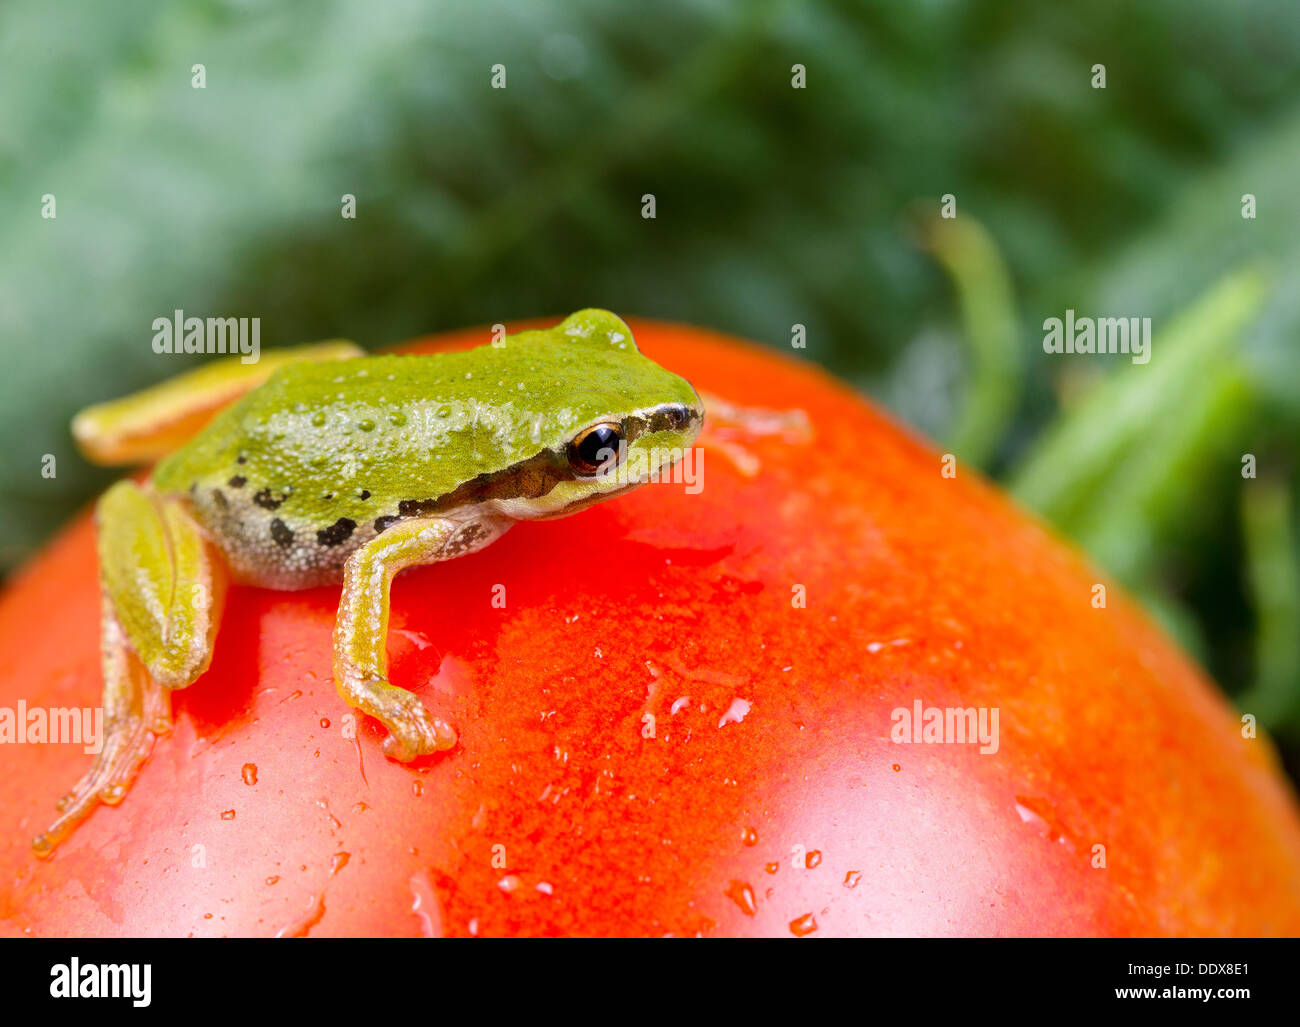 Foto orizzontale di giardino verde rana su unico grande pomodoro maturo con sfocate giardino fuori in background Foto Stock